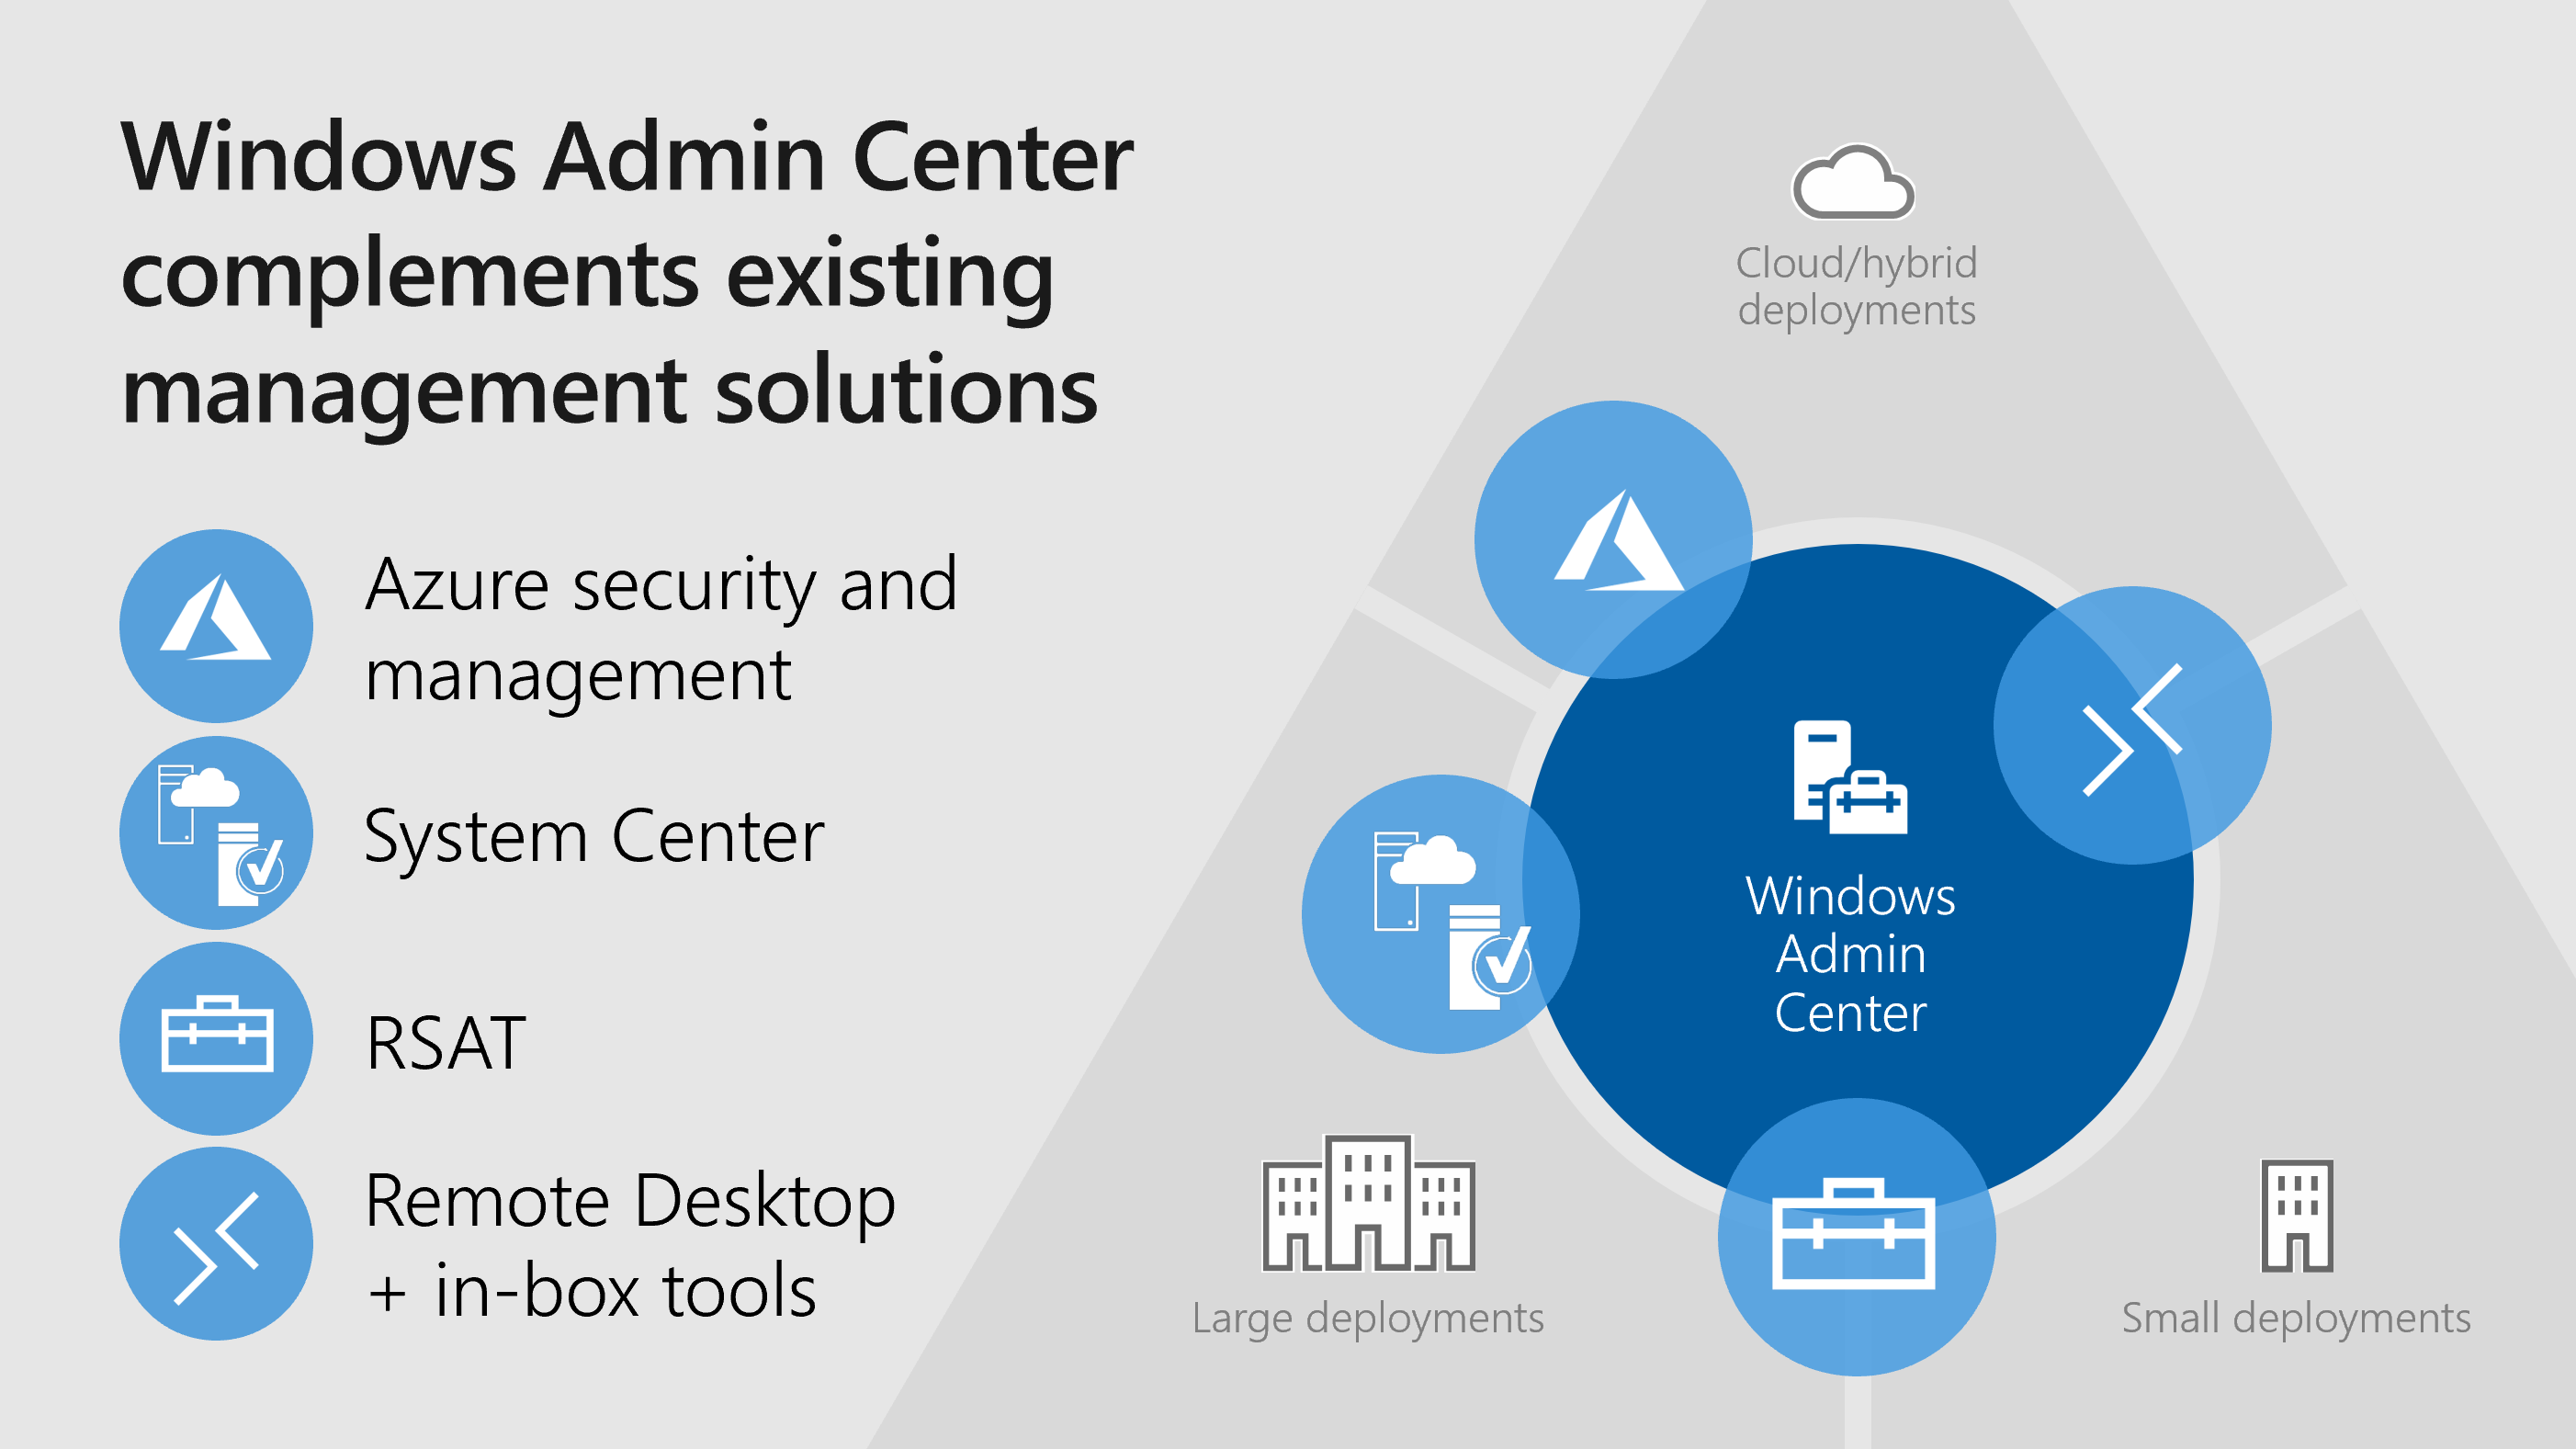 Windows Admin Center คือ แอพพลิเคชันที่ใช้งานอยู่ภายในเครื่องระบบปฏิบัติการ Windows Server ซึ่ง Windows Admin Center จะใช้เว็บเบราว์เซอร์เพื่อจัดการกับ Server ,กลุ่มServer โครงสร้างพื้นฐานที่มีการรวมกันแบบ hyper และ Computer PC Windows 10 ไม่ต้องเสียค่าใช้จ่ายเพิ่มเติมนอกเหนือจาก Windows และพร้อมที่จะใช้ในการผลิต
Windows Admin Center ได้รับการออกแบบมาสำหรับการจัดการกับ Windows Server หรือคลัสเตอร์แต่มันไม่ได้มีวัตถุประสงค์เพื่อแทนที่โซลูชันการจัดการ Microsoft ที่มีอยู่เดิม เช่น Remote Server Administration Tools (RSAT), System Center, Intune หรือ Azure Stack
Windows Admin Center ทำงานในเว็บเบราเซอร์ และสามารถจัดการกับ Windows Server 2016, Windows Server 2012 R2, Windows Server 2012, Windows Server 2008 R2, Windows 10 และอื่น ๆ ผ่านเกตเวย์ของ Windows Admin Center ที่ติดตั้งบน Windows Server 2016 หรือ Windows 10 เกตเวย์จัดการเซิร์ฟเวอร์โดยใช้ Remote PowerShell และ WMI ผ่าน WinRM เกตเวย์จะมาพร้อมกับ Windows Admin Center ในแพคเกจ. msi น้ำหนักเบาเพียงเล็กน้อย ที่คุณสามารถดาวน์โหลดผลิตภัณฑ์ และอ่านเอกสารเพิ่มเติมได้ที่ 
https://docs.microsoft.com/en-us/windows-server/manage/windows-admin-center/understand/windows-admin-center ,Windows Admin Center คือ ,Windows Admin Center ใช้ยังไง ,Windows Admin Center วิธีติดตั้ง ,Windows Admin Center download , Windows Admin Center ดาวน์โหลด ,เป็น,